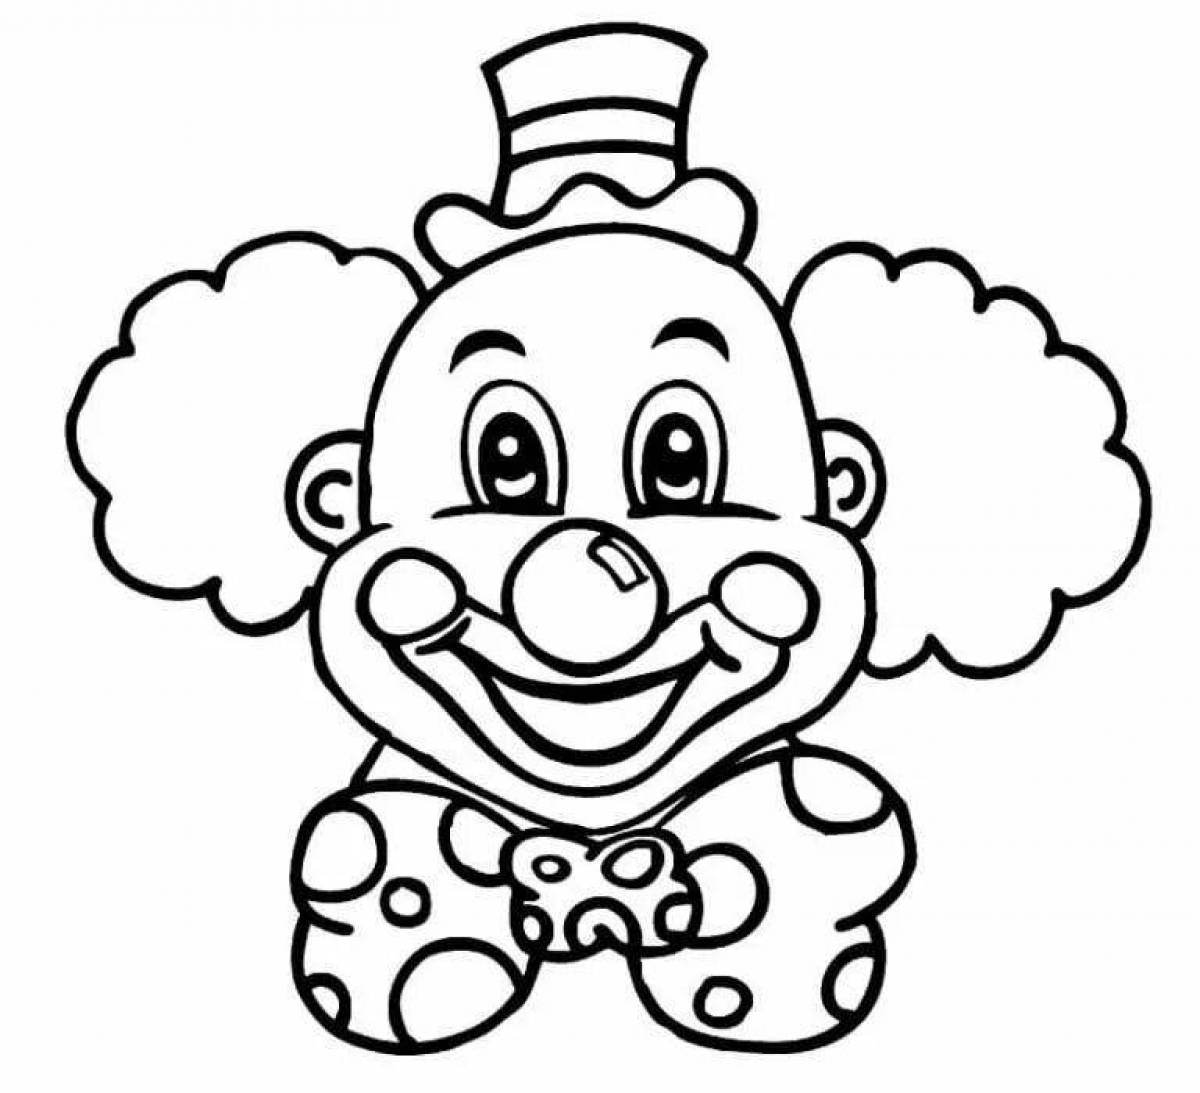 Weird clown face painting